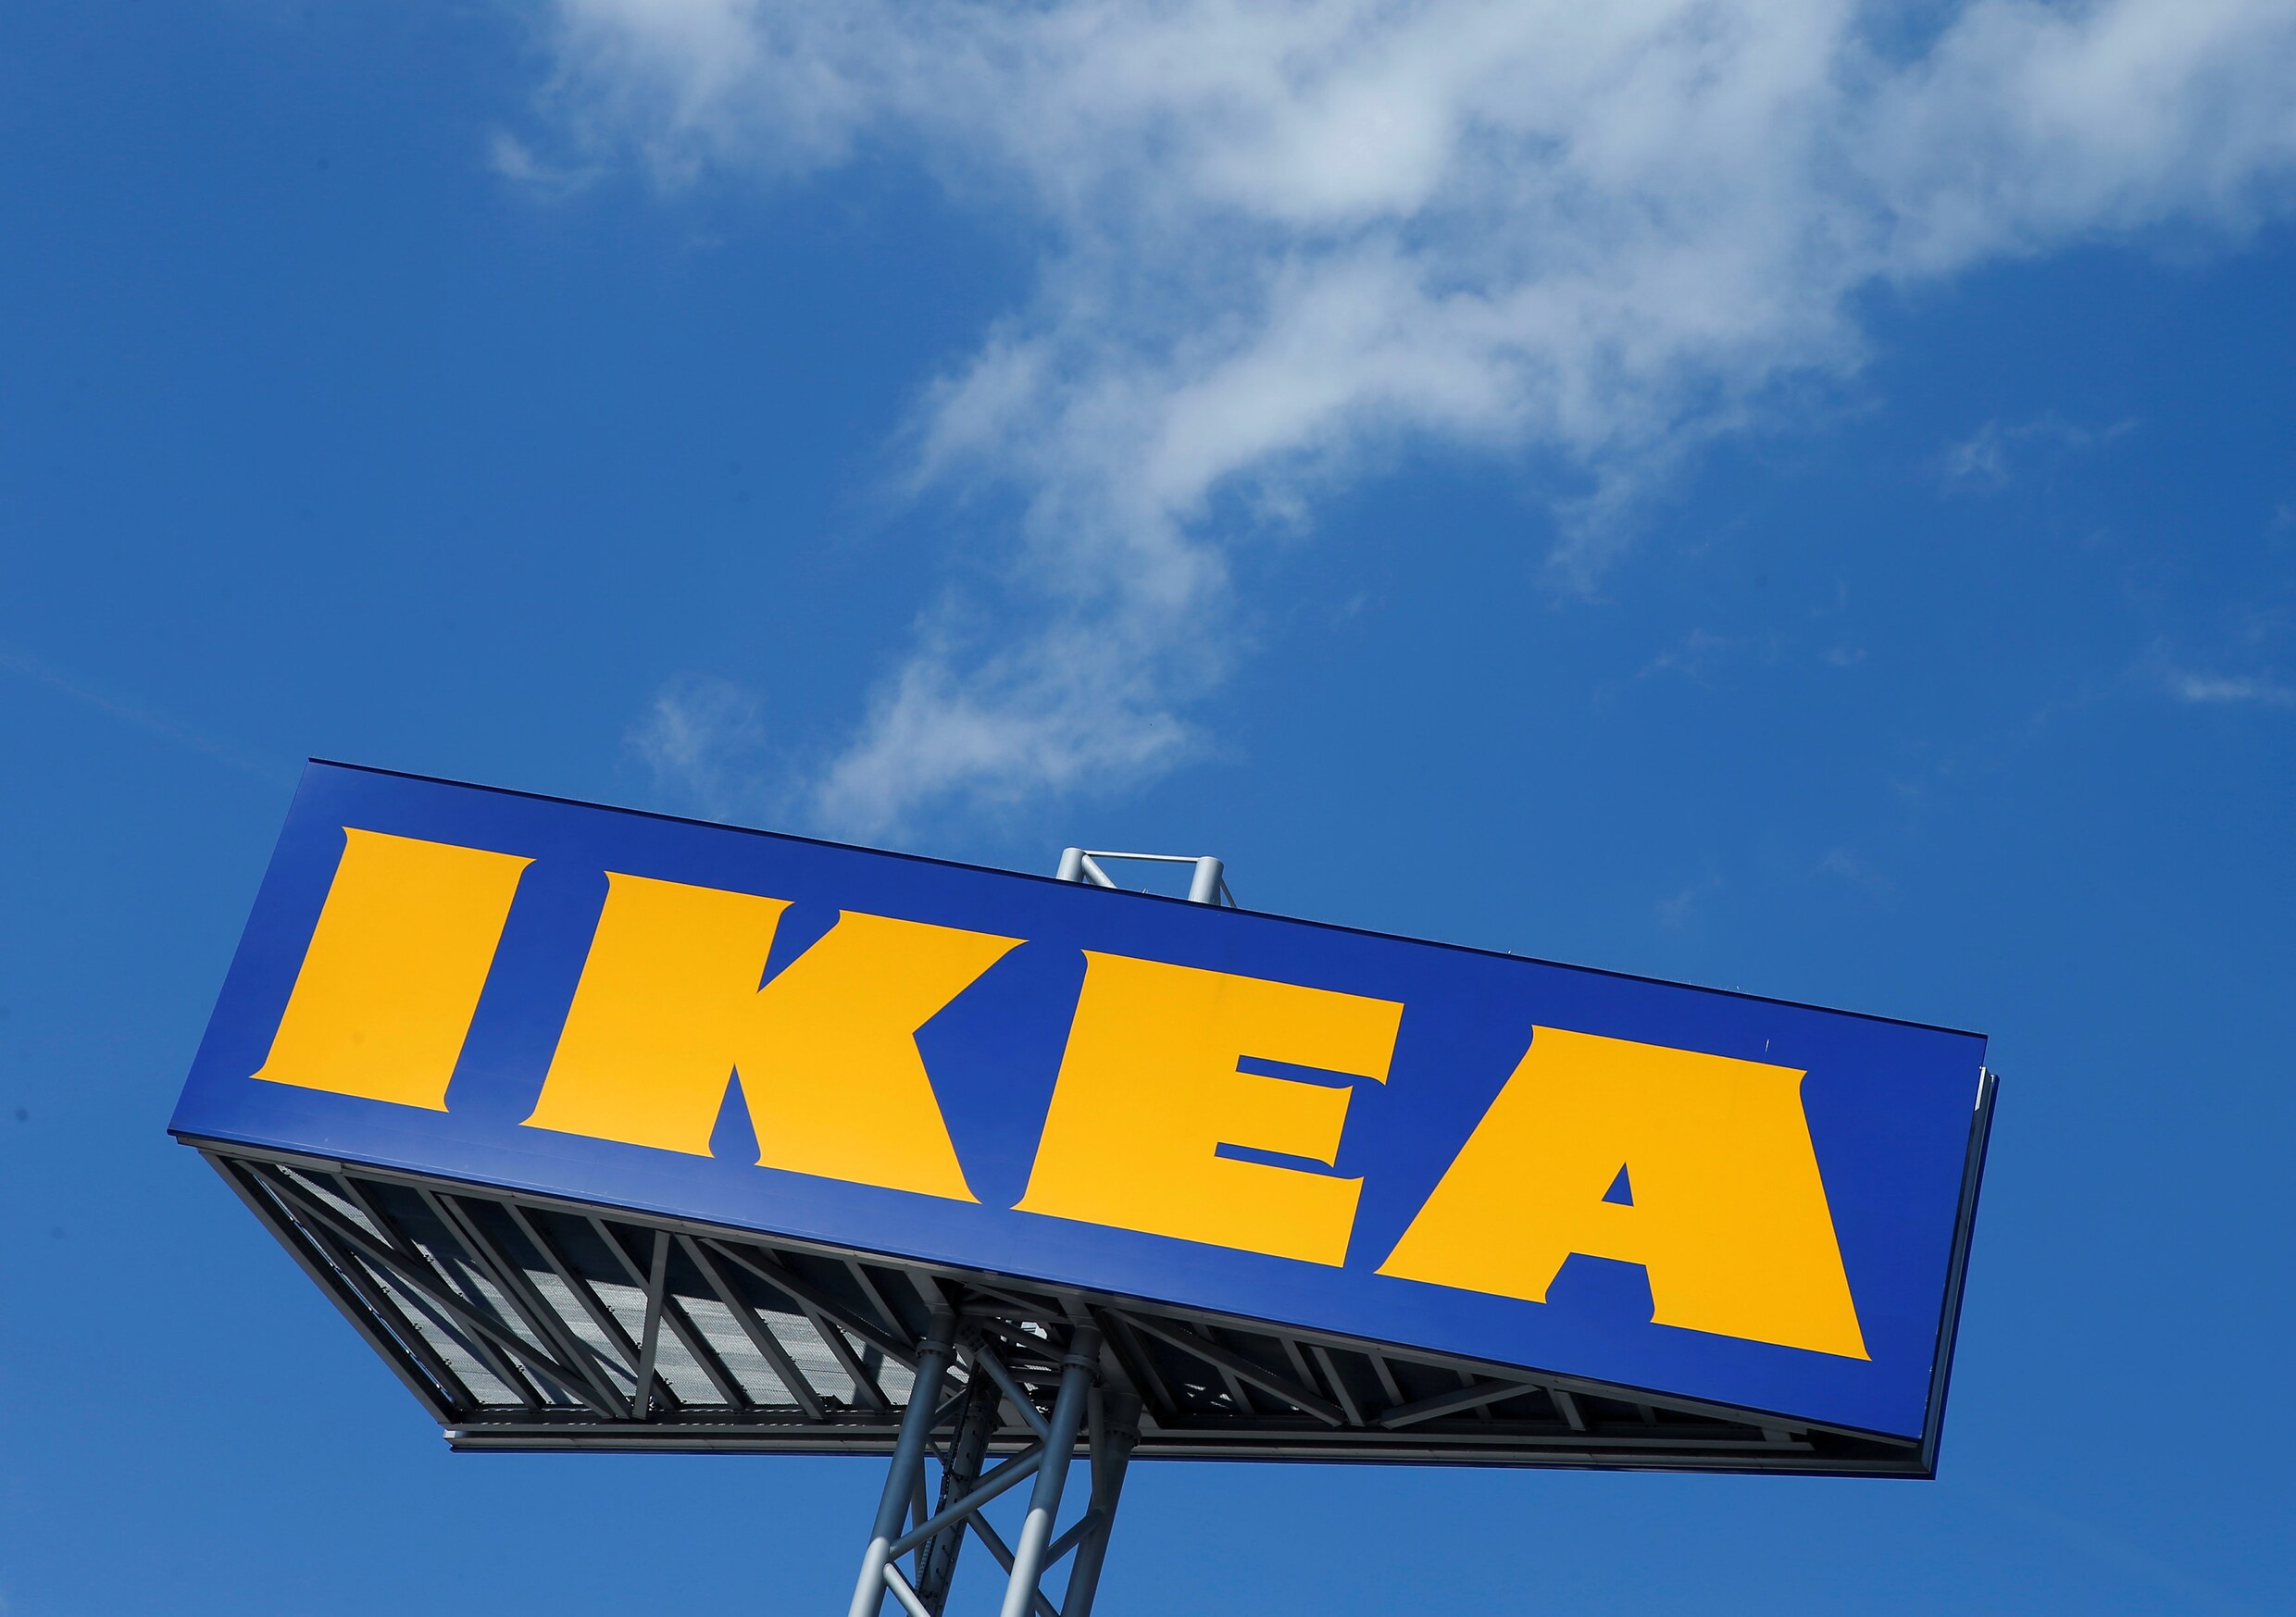 IKEA doet plastic wegwerpproducten in de ban